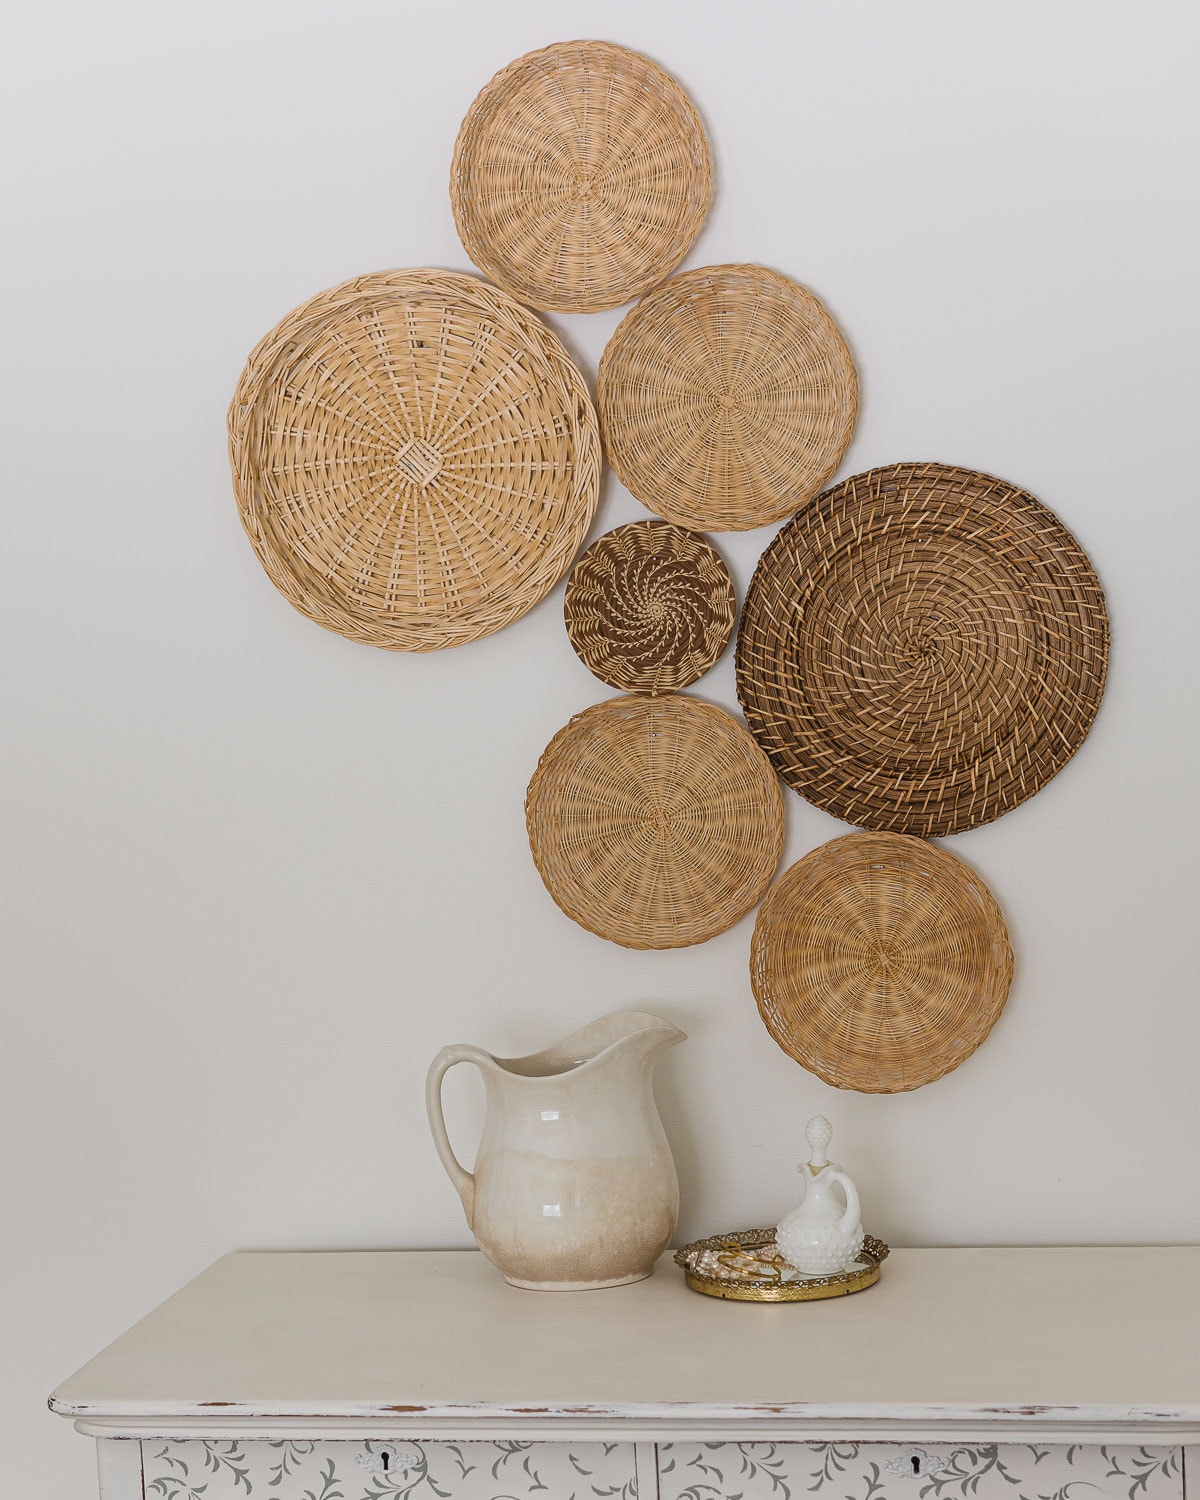 Basket Gallery Wall + Tutorial